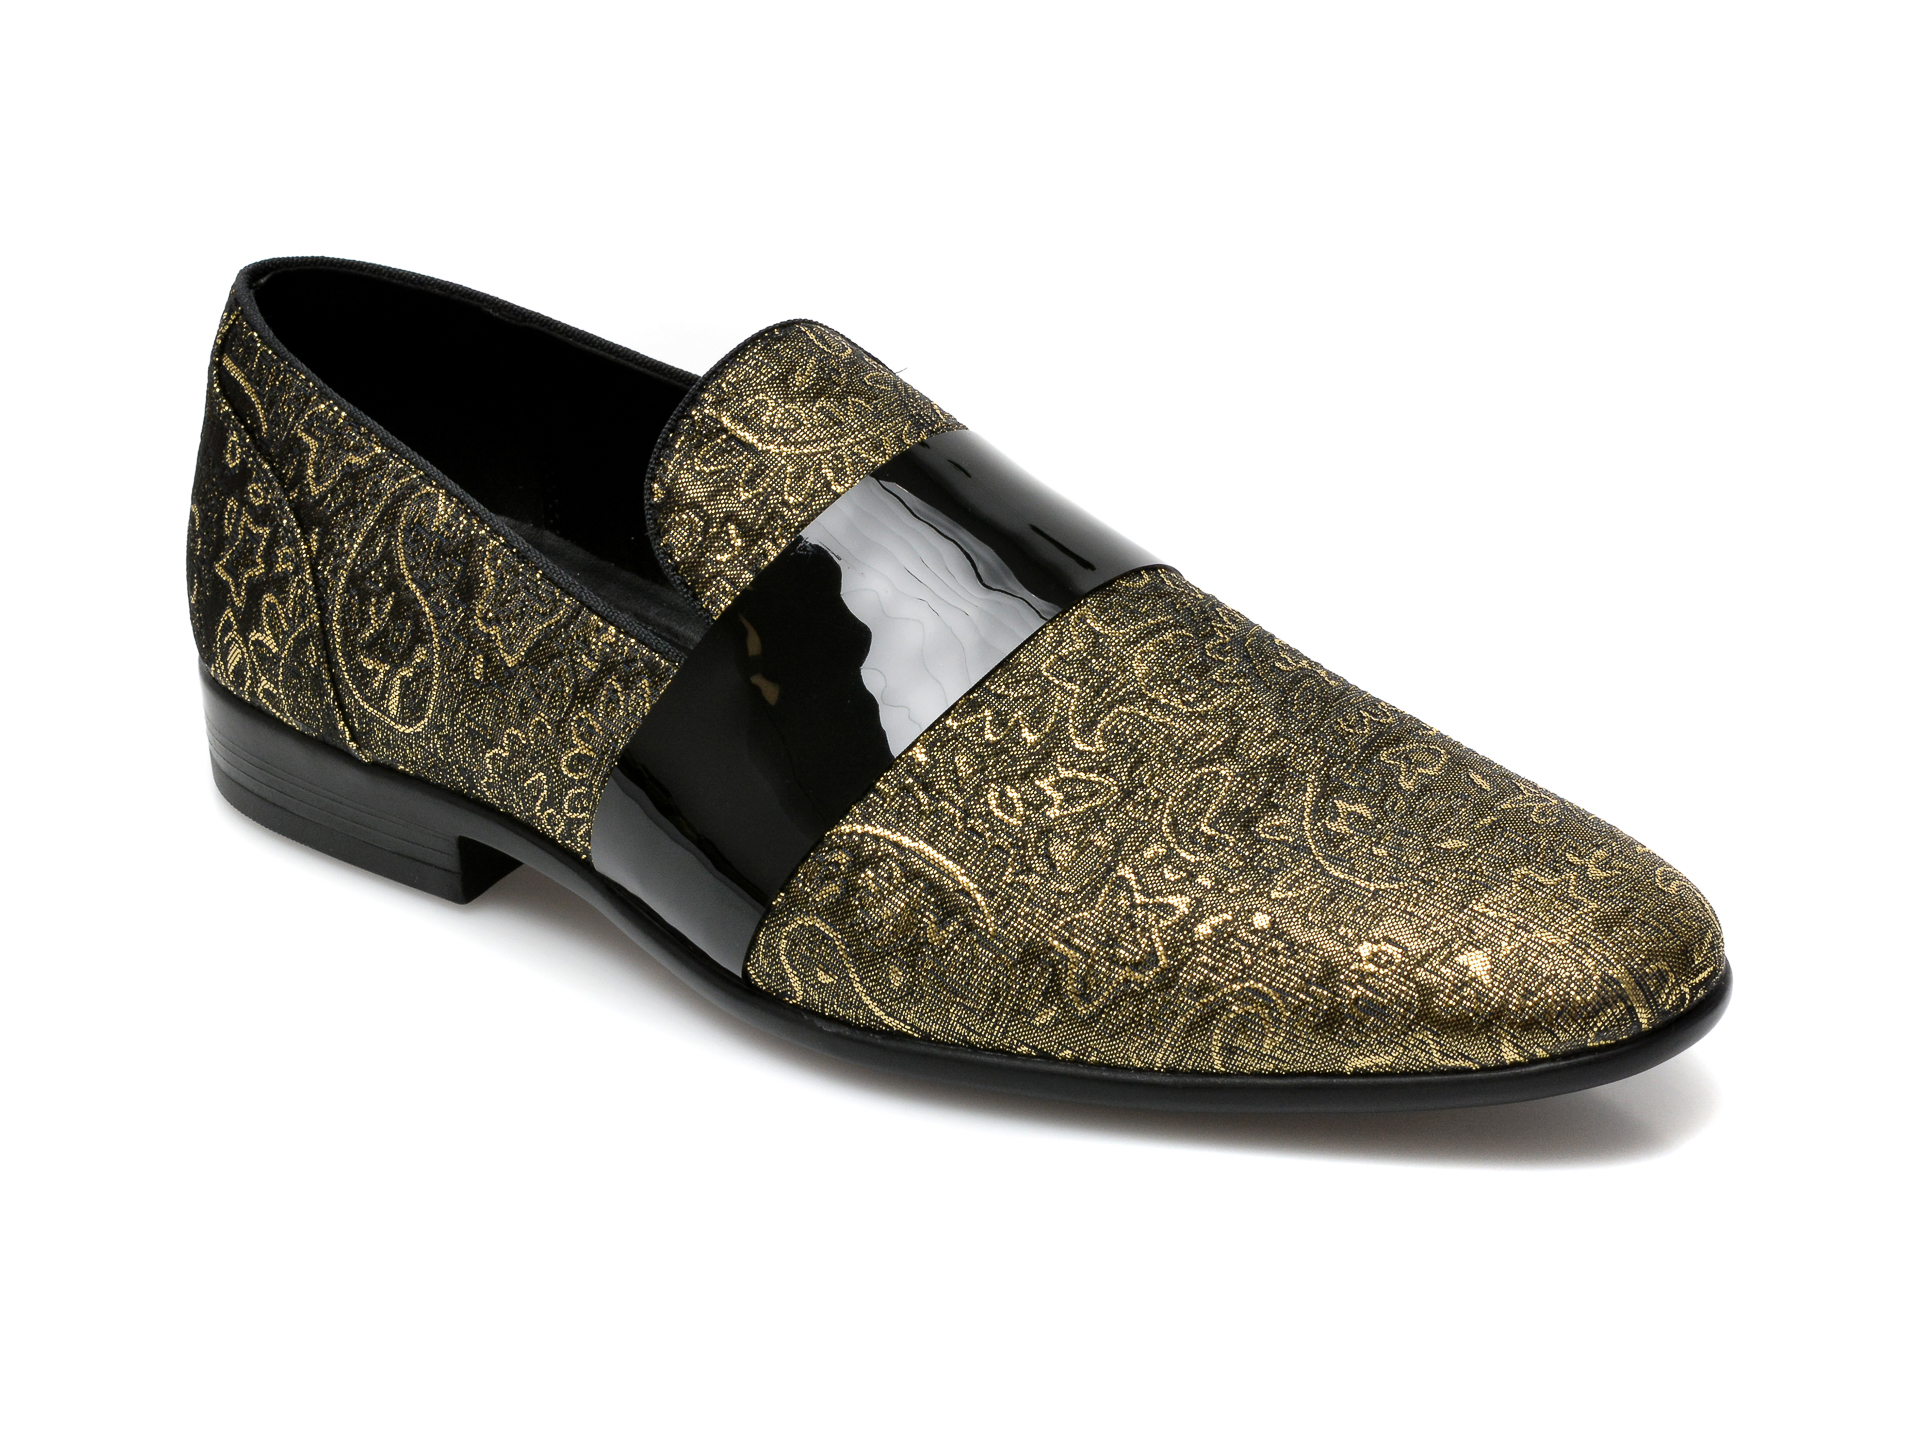 Pantofi ALDO negri, Asaria001, din material textil Aldo